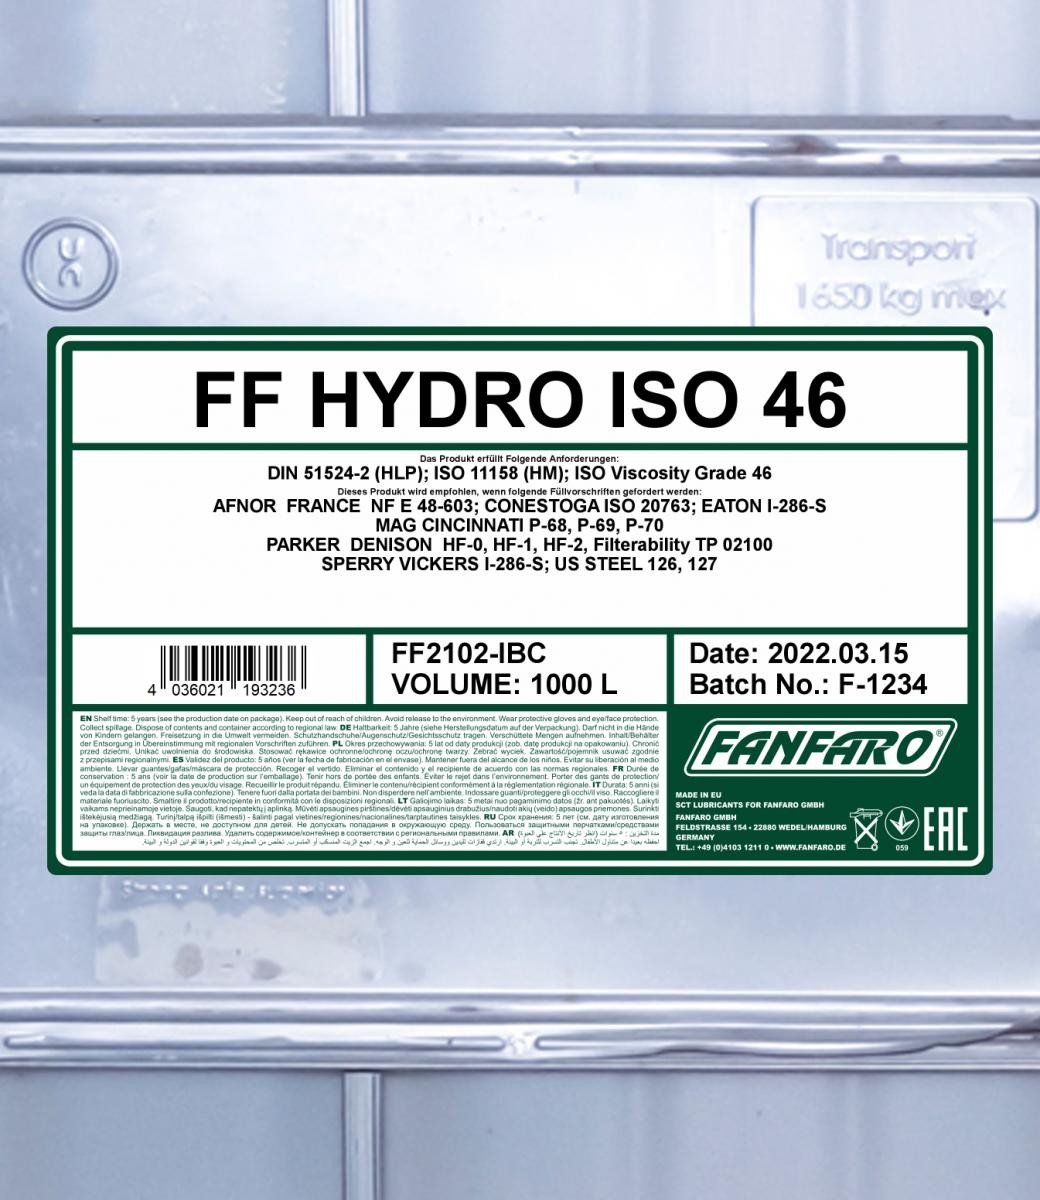 FANFARO Hydraulic fluid FF2102-IBC